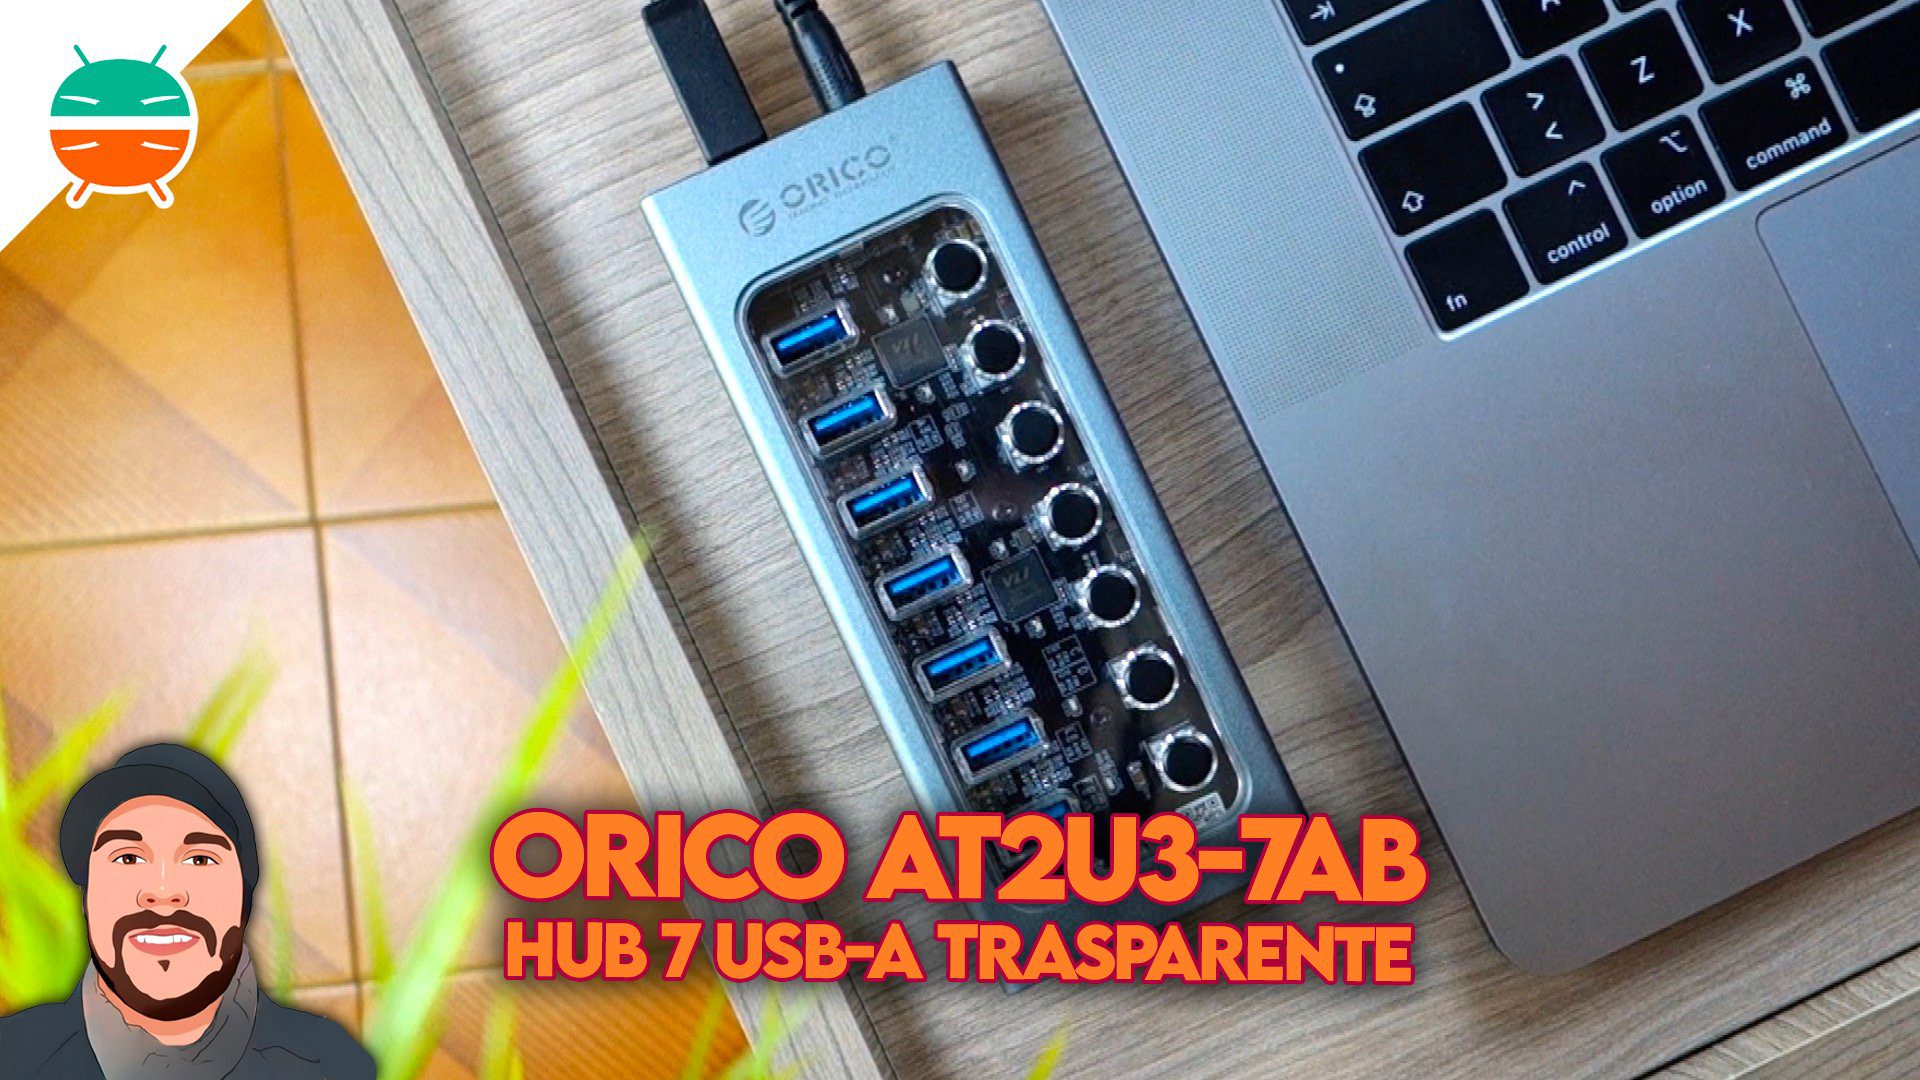 ORICO AT2U3-7AB recension, en futuristisk HUB med 7 oberoende USB-A 3.0